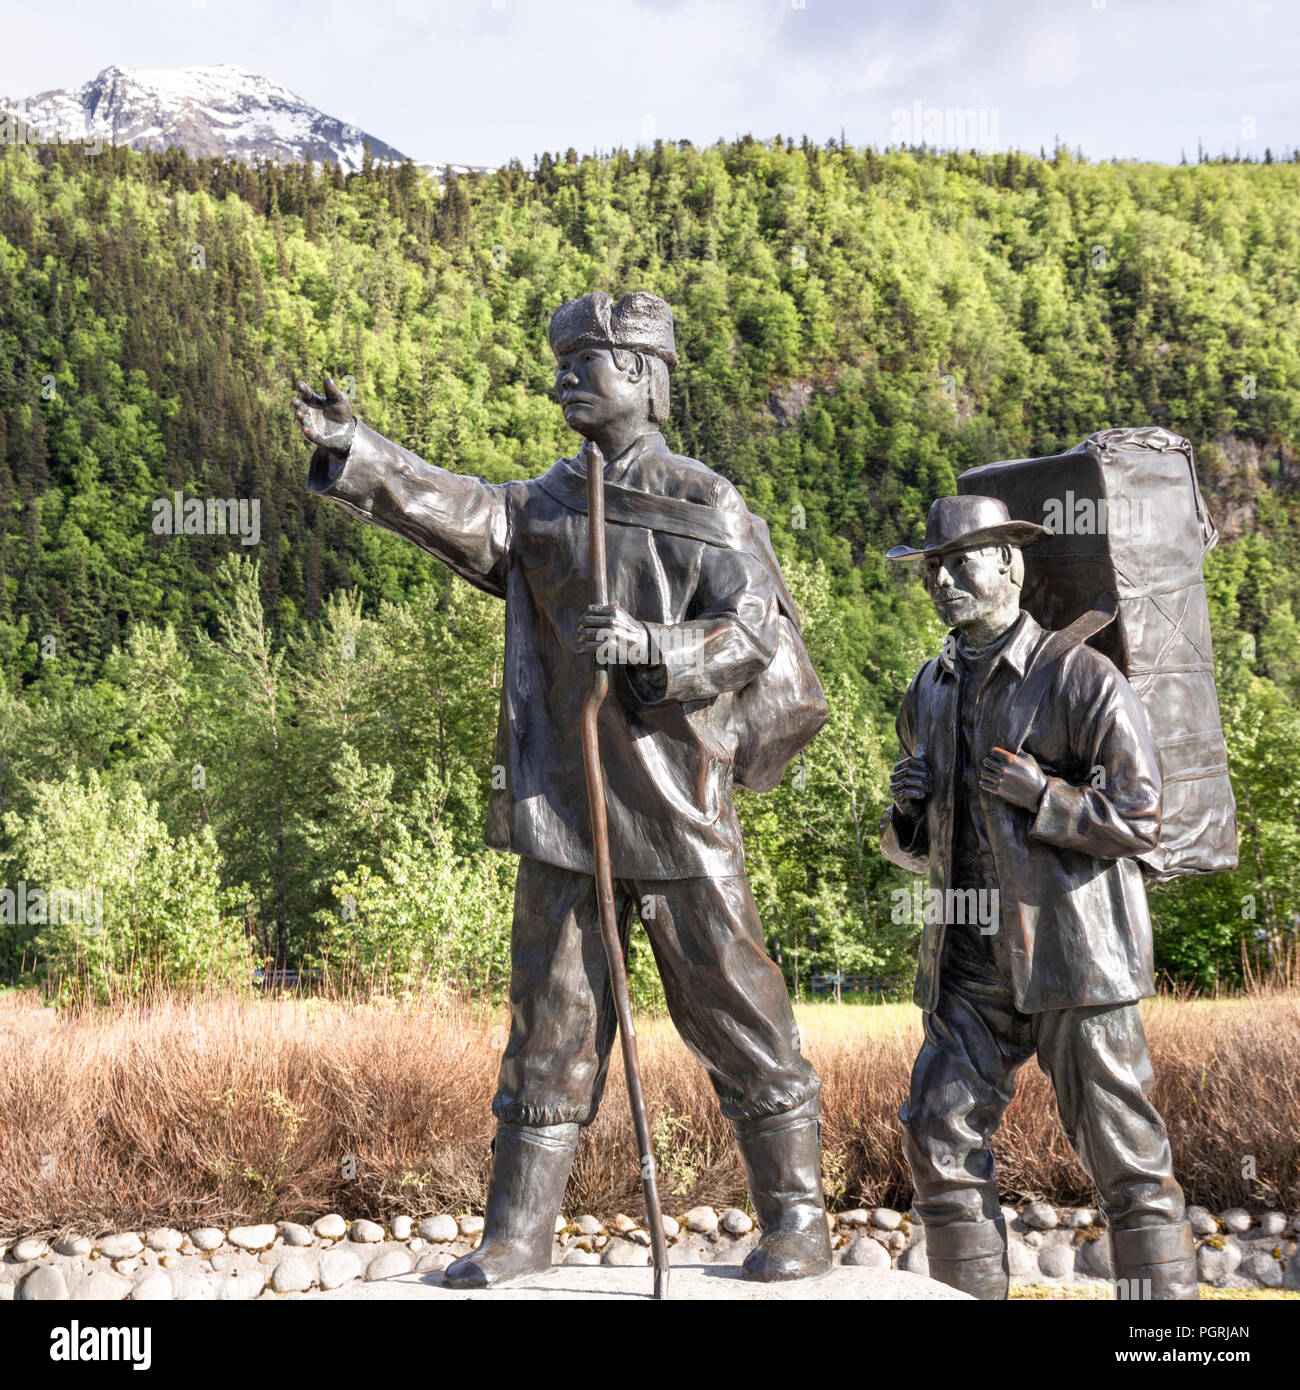 La Statue du centenaire de Skagway par Chuck Buchanan montrant un prospecteur typique à l'époque de la ruée vers l'être conduit par un guide autochtone Tlingit Banque D'Images